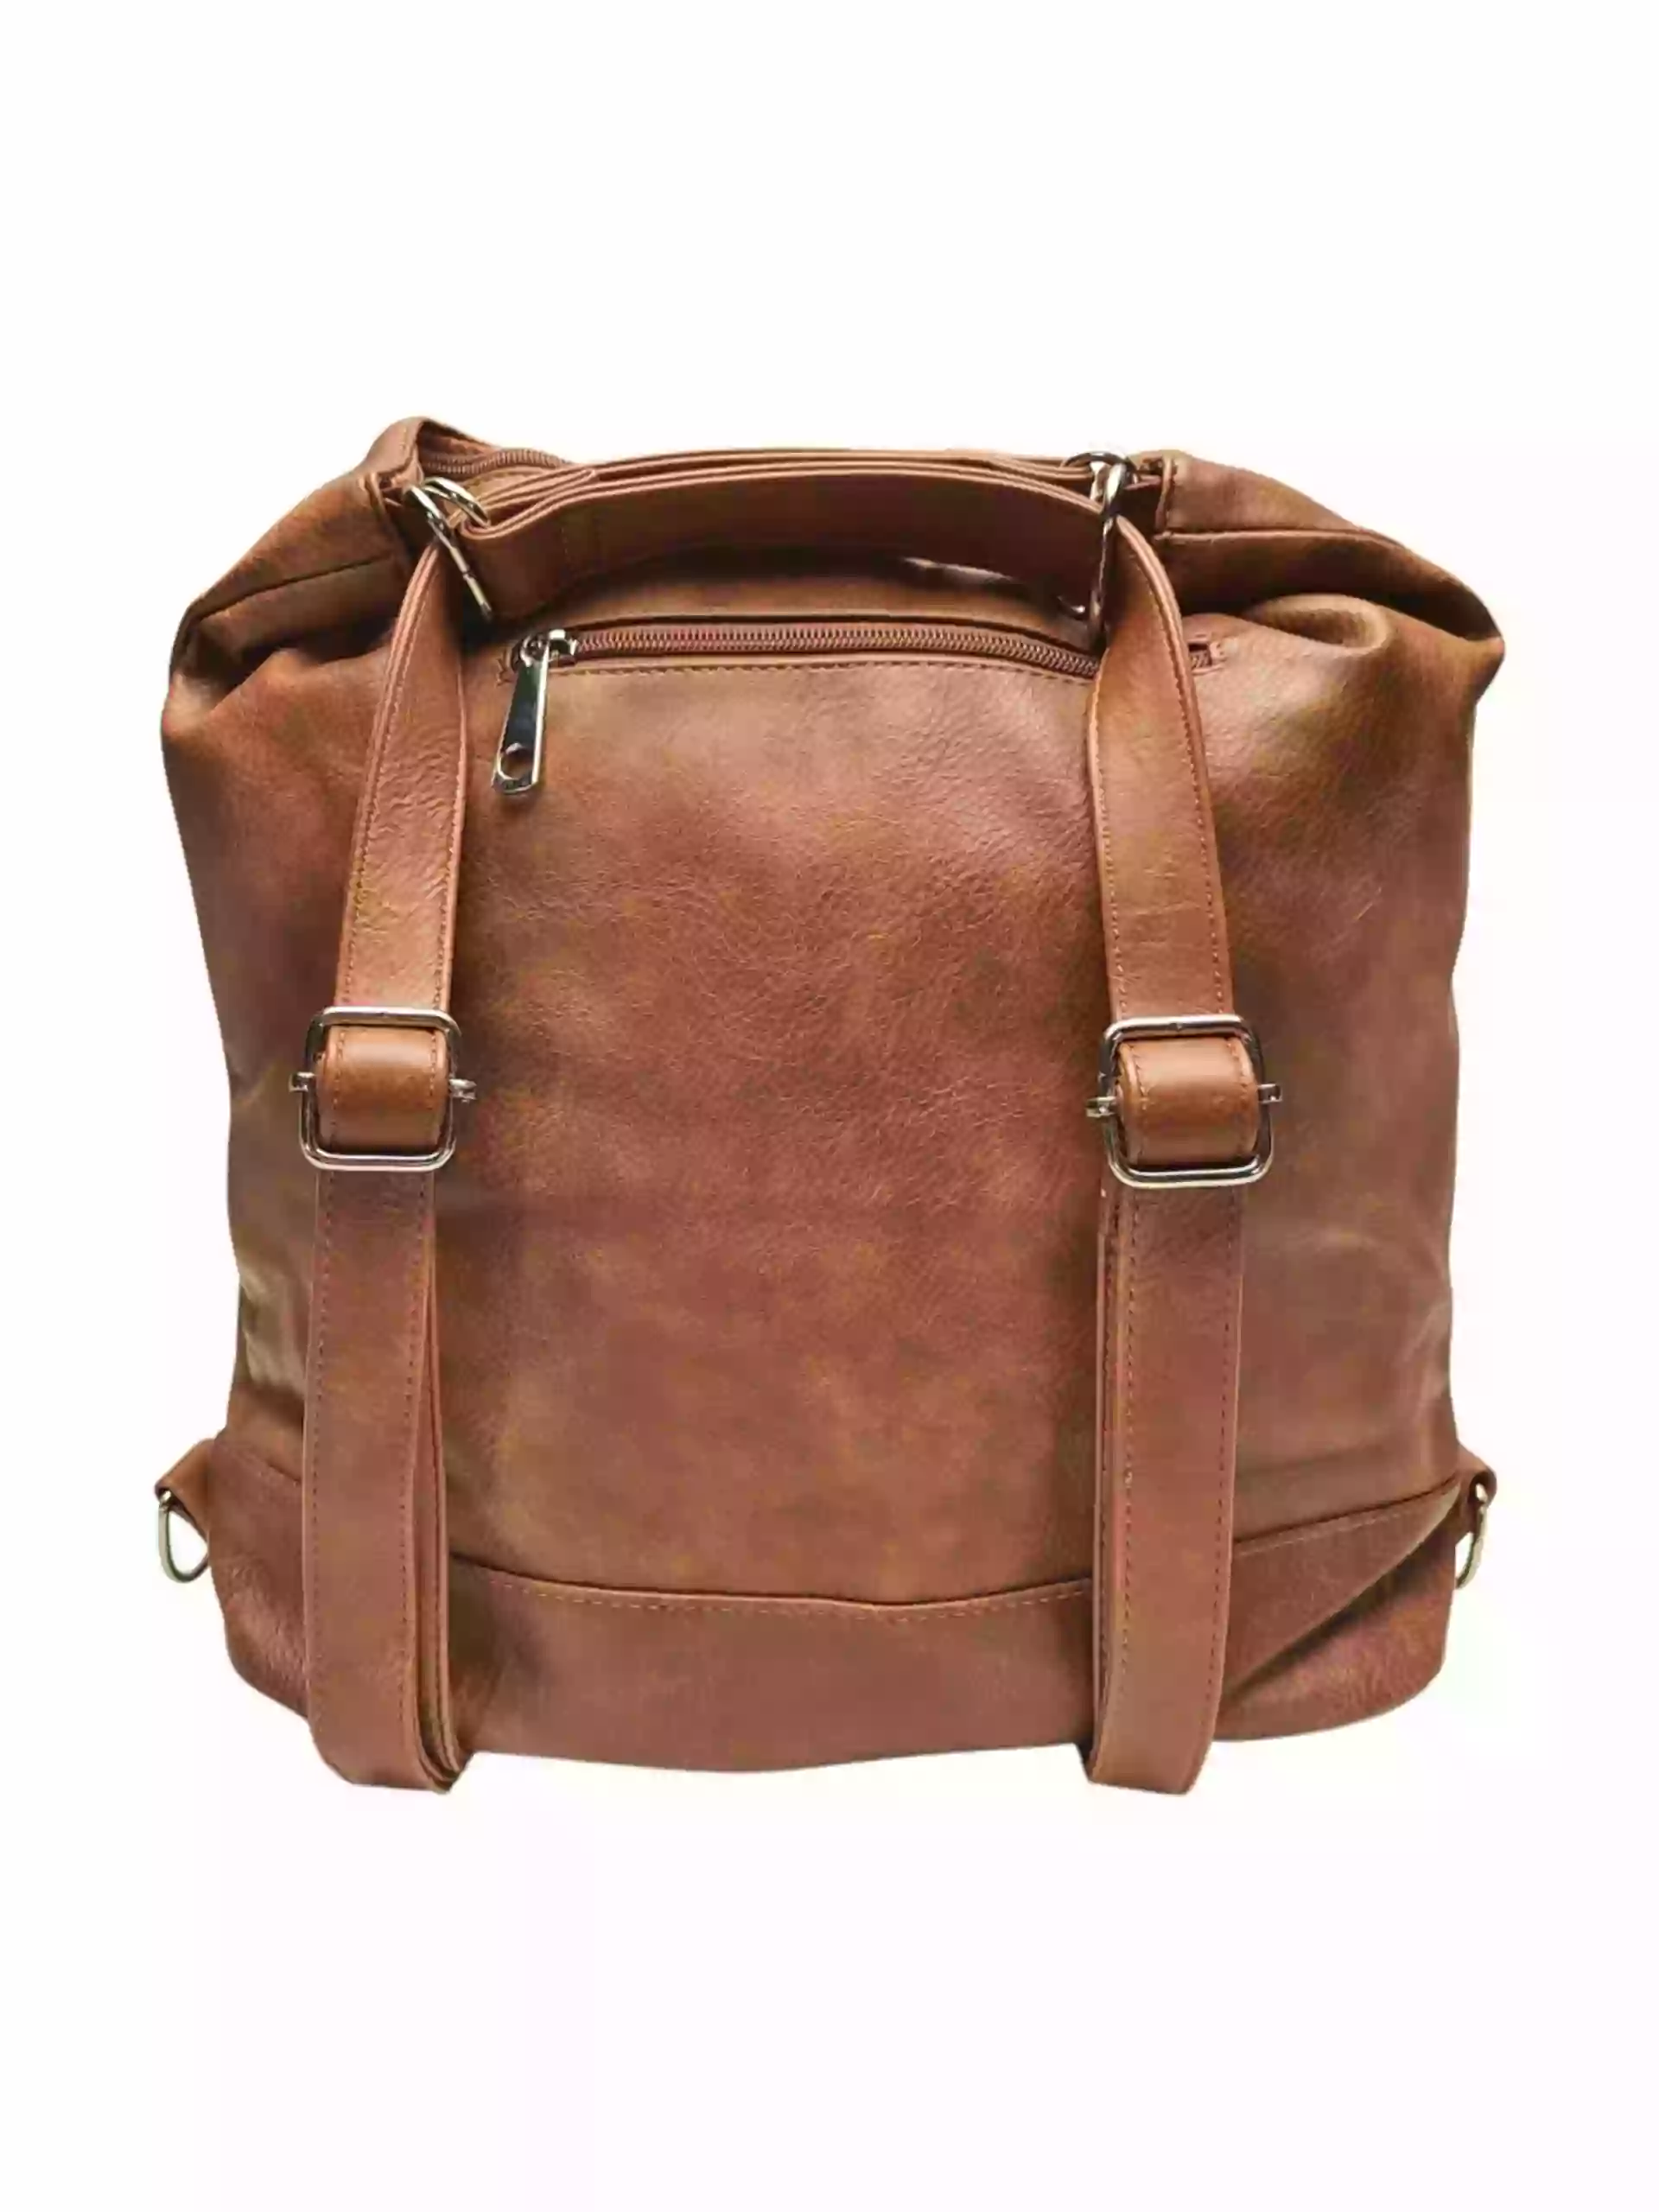 Velký středně hnědý kabelko-batoh s kapsami, Tapple, H23906, zadní strana kabelko-batohu s popruhy